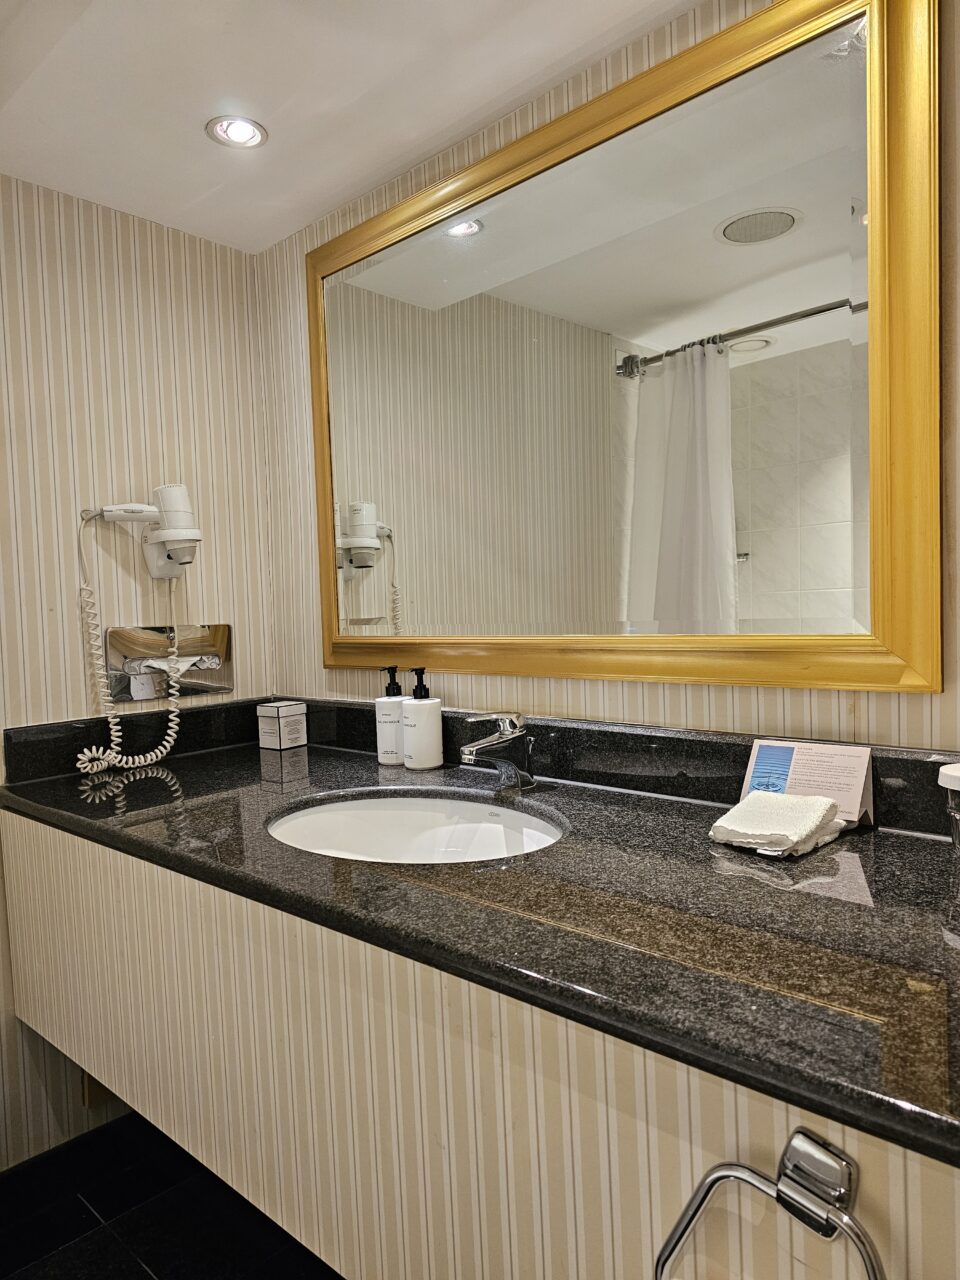 Bad med gullspeil, vask og badekar. Foto